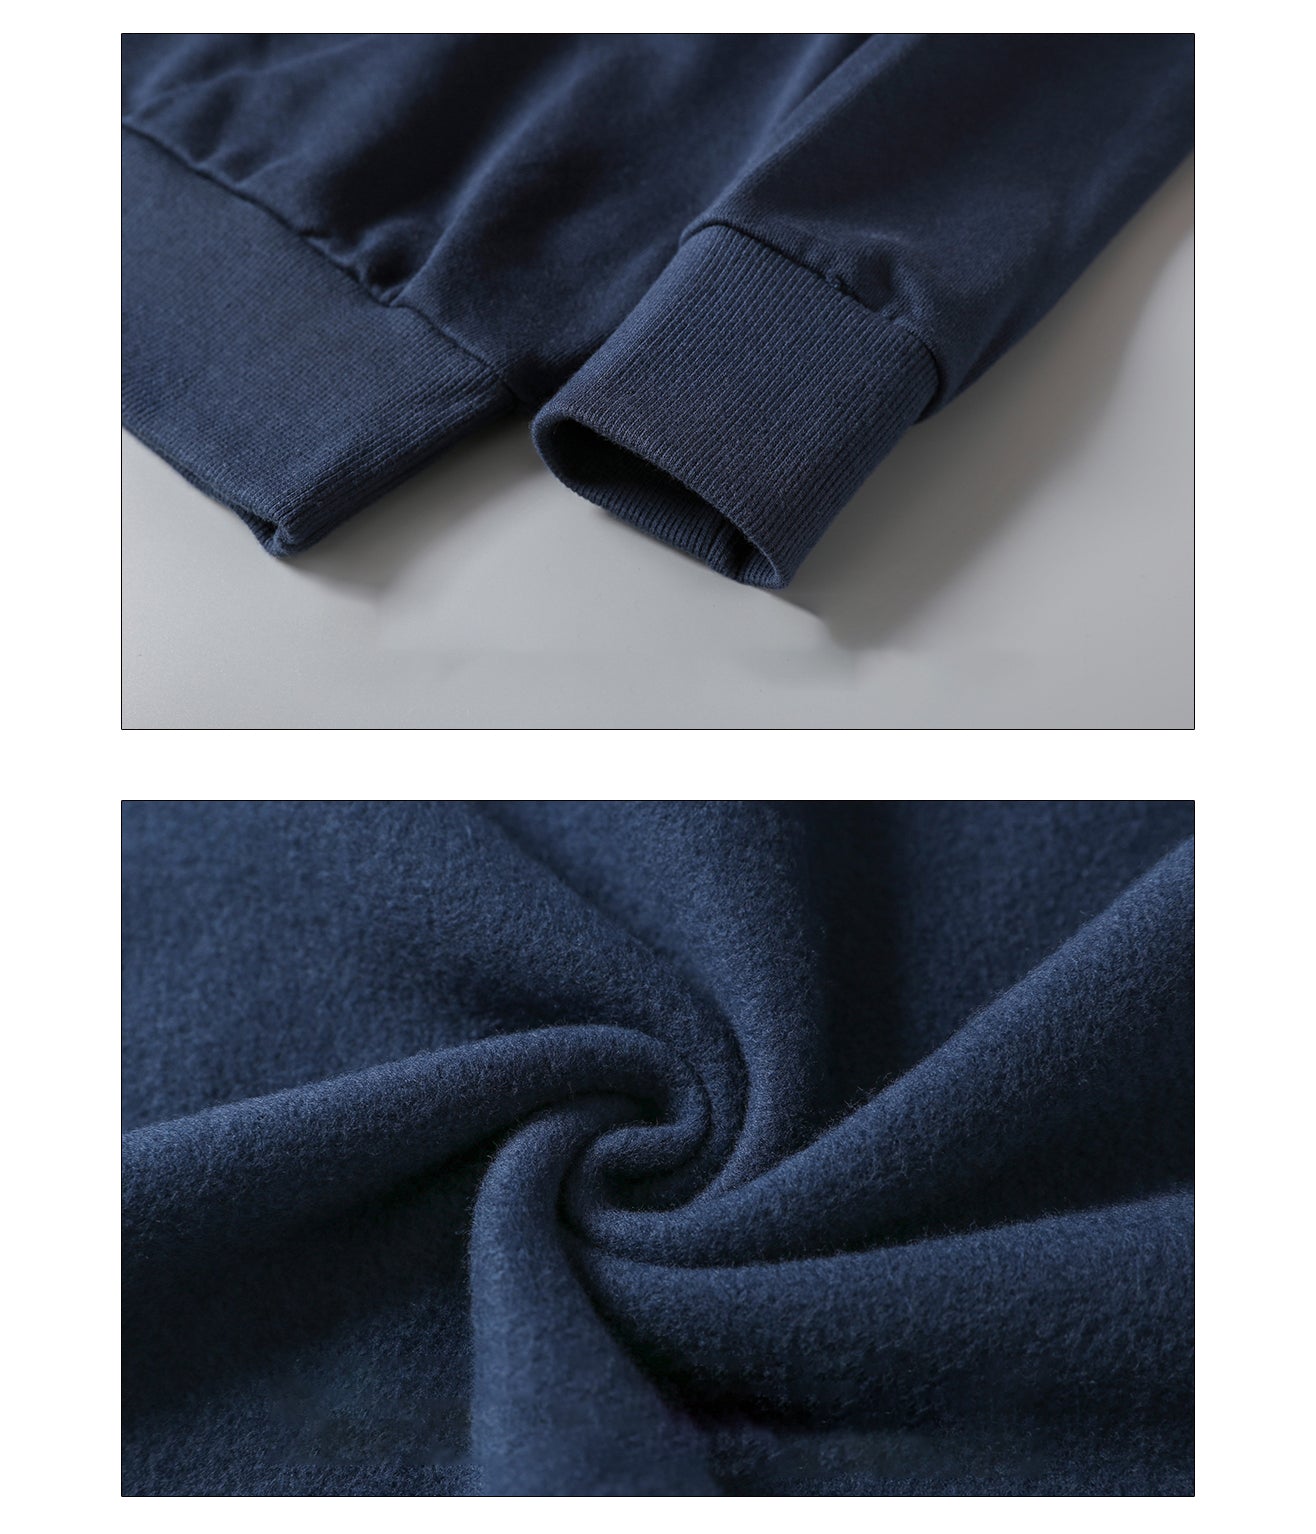 Cotton Polyester 290gsm Brushed Fleece Sweatshirt